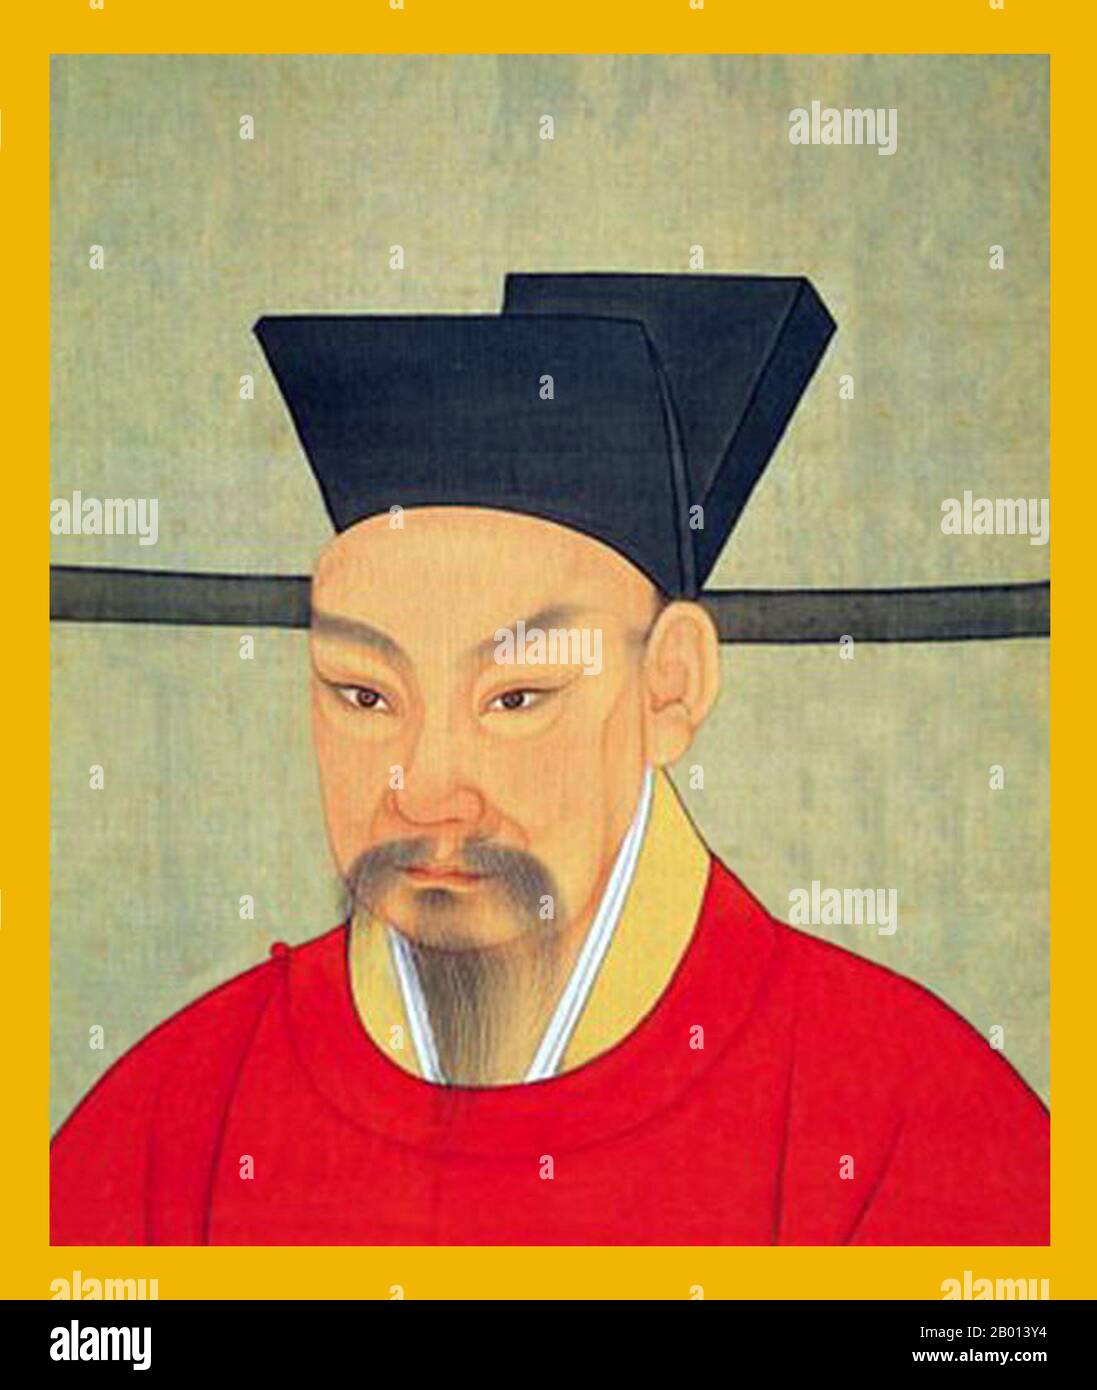 China: Emperador Lizong (26January 1205 - 16 de noviembre de 1264), 14th regente de la Dinastía Song y 5th regente de la Canción Sur (r. 1224-1264). Pintura colgante, c. 1224-1264. El emperador Lizong, nombre personal Zhao Yun y originalmente conocido como Zhao Yuju y Zhao Guicheng, fue el quinto emperador de la Canción del Sur. El largo reinado de Lizong de cuarenta años hizo poco para mejorar la situación en la que se encontraba Song China en ese momento. Lizong no estaba interesado en asuntos gubernamentales, delegando asuntos en manos de sus ministros mientras persiguió placeres frívolos, incluso cuando los mongoles se acercaron. Foto de stock